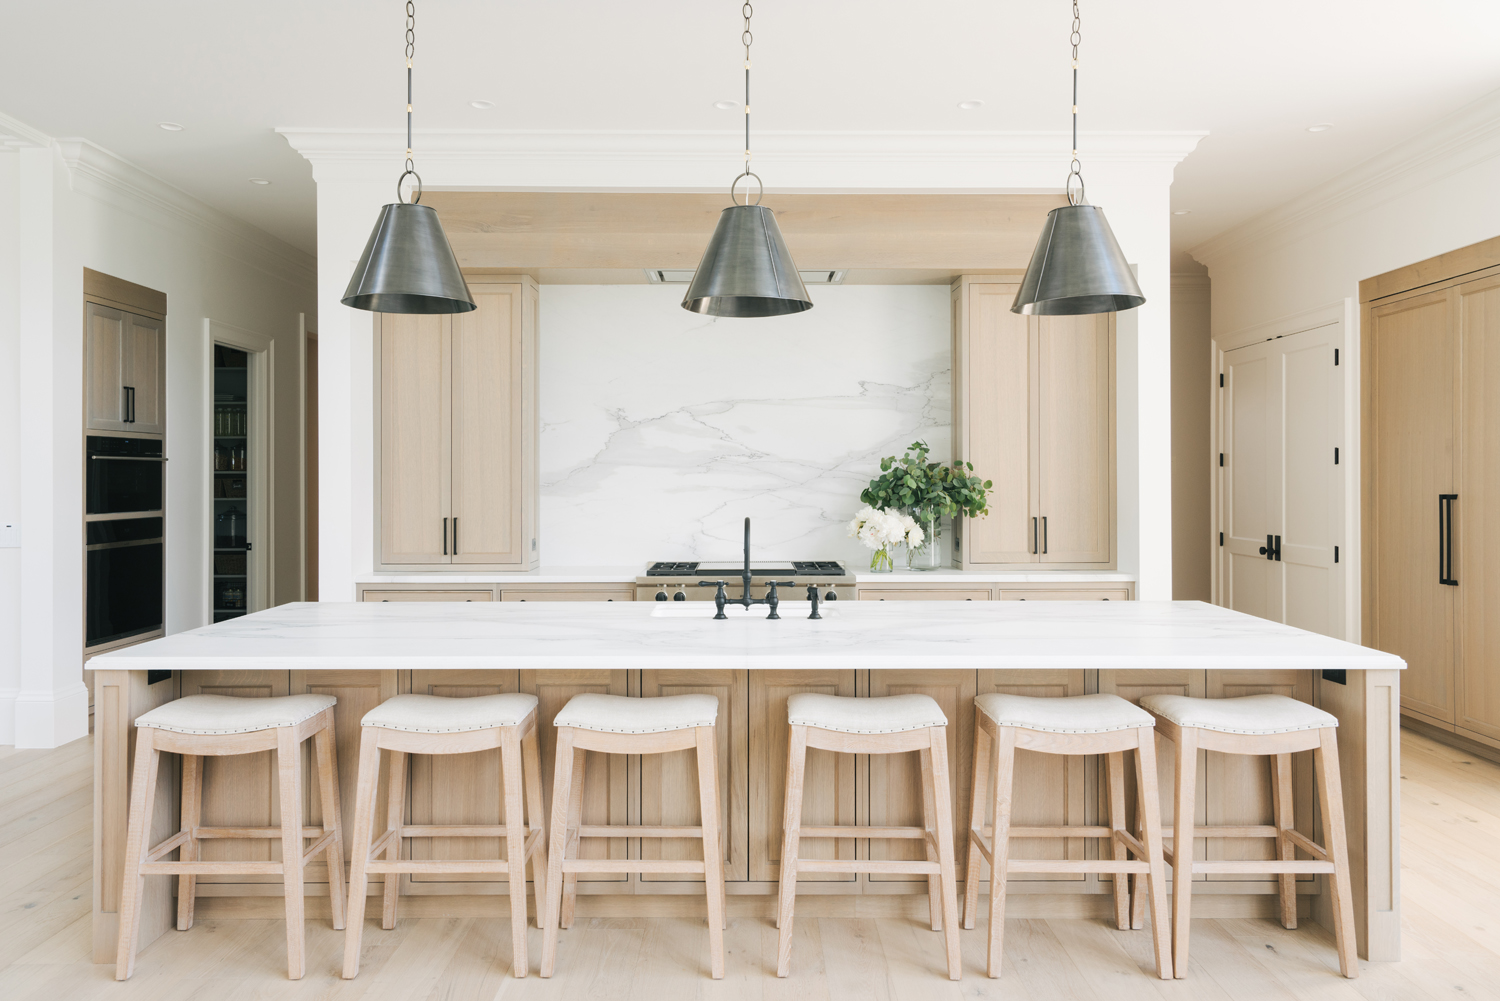 White Oak Kitchens - Interior Design Inspiration | Eva Designs